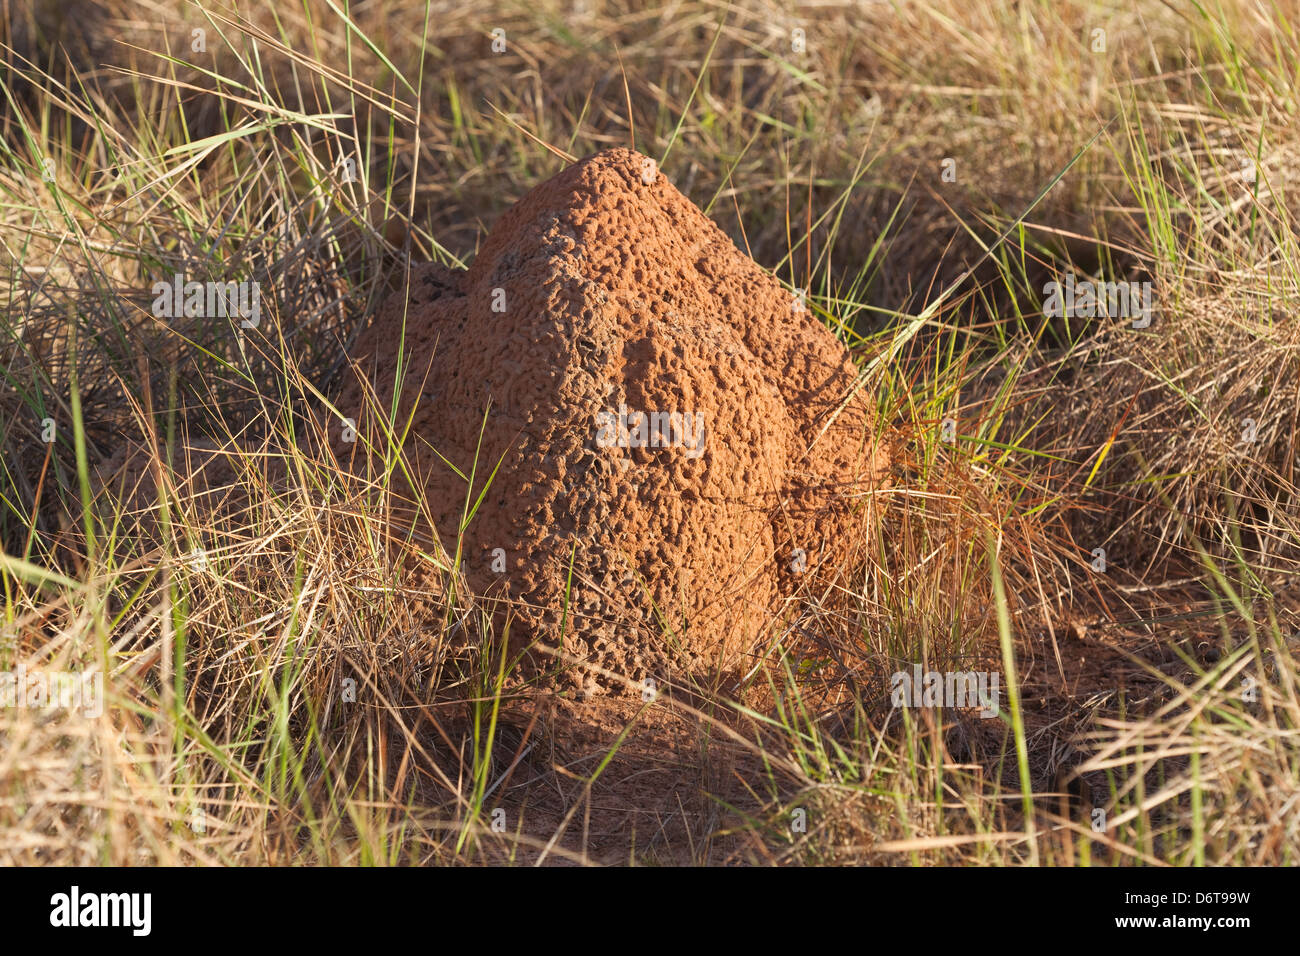 Termite Mound. Karanambu Ranch. Savannah Grasland. Fisch; Guyana. Nahrungsquelle für riesige Ameisenbären (Myrmecophaga Tridactyla) Stockfoto